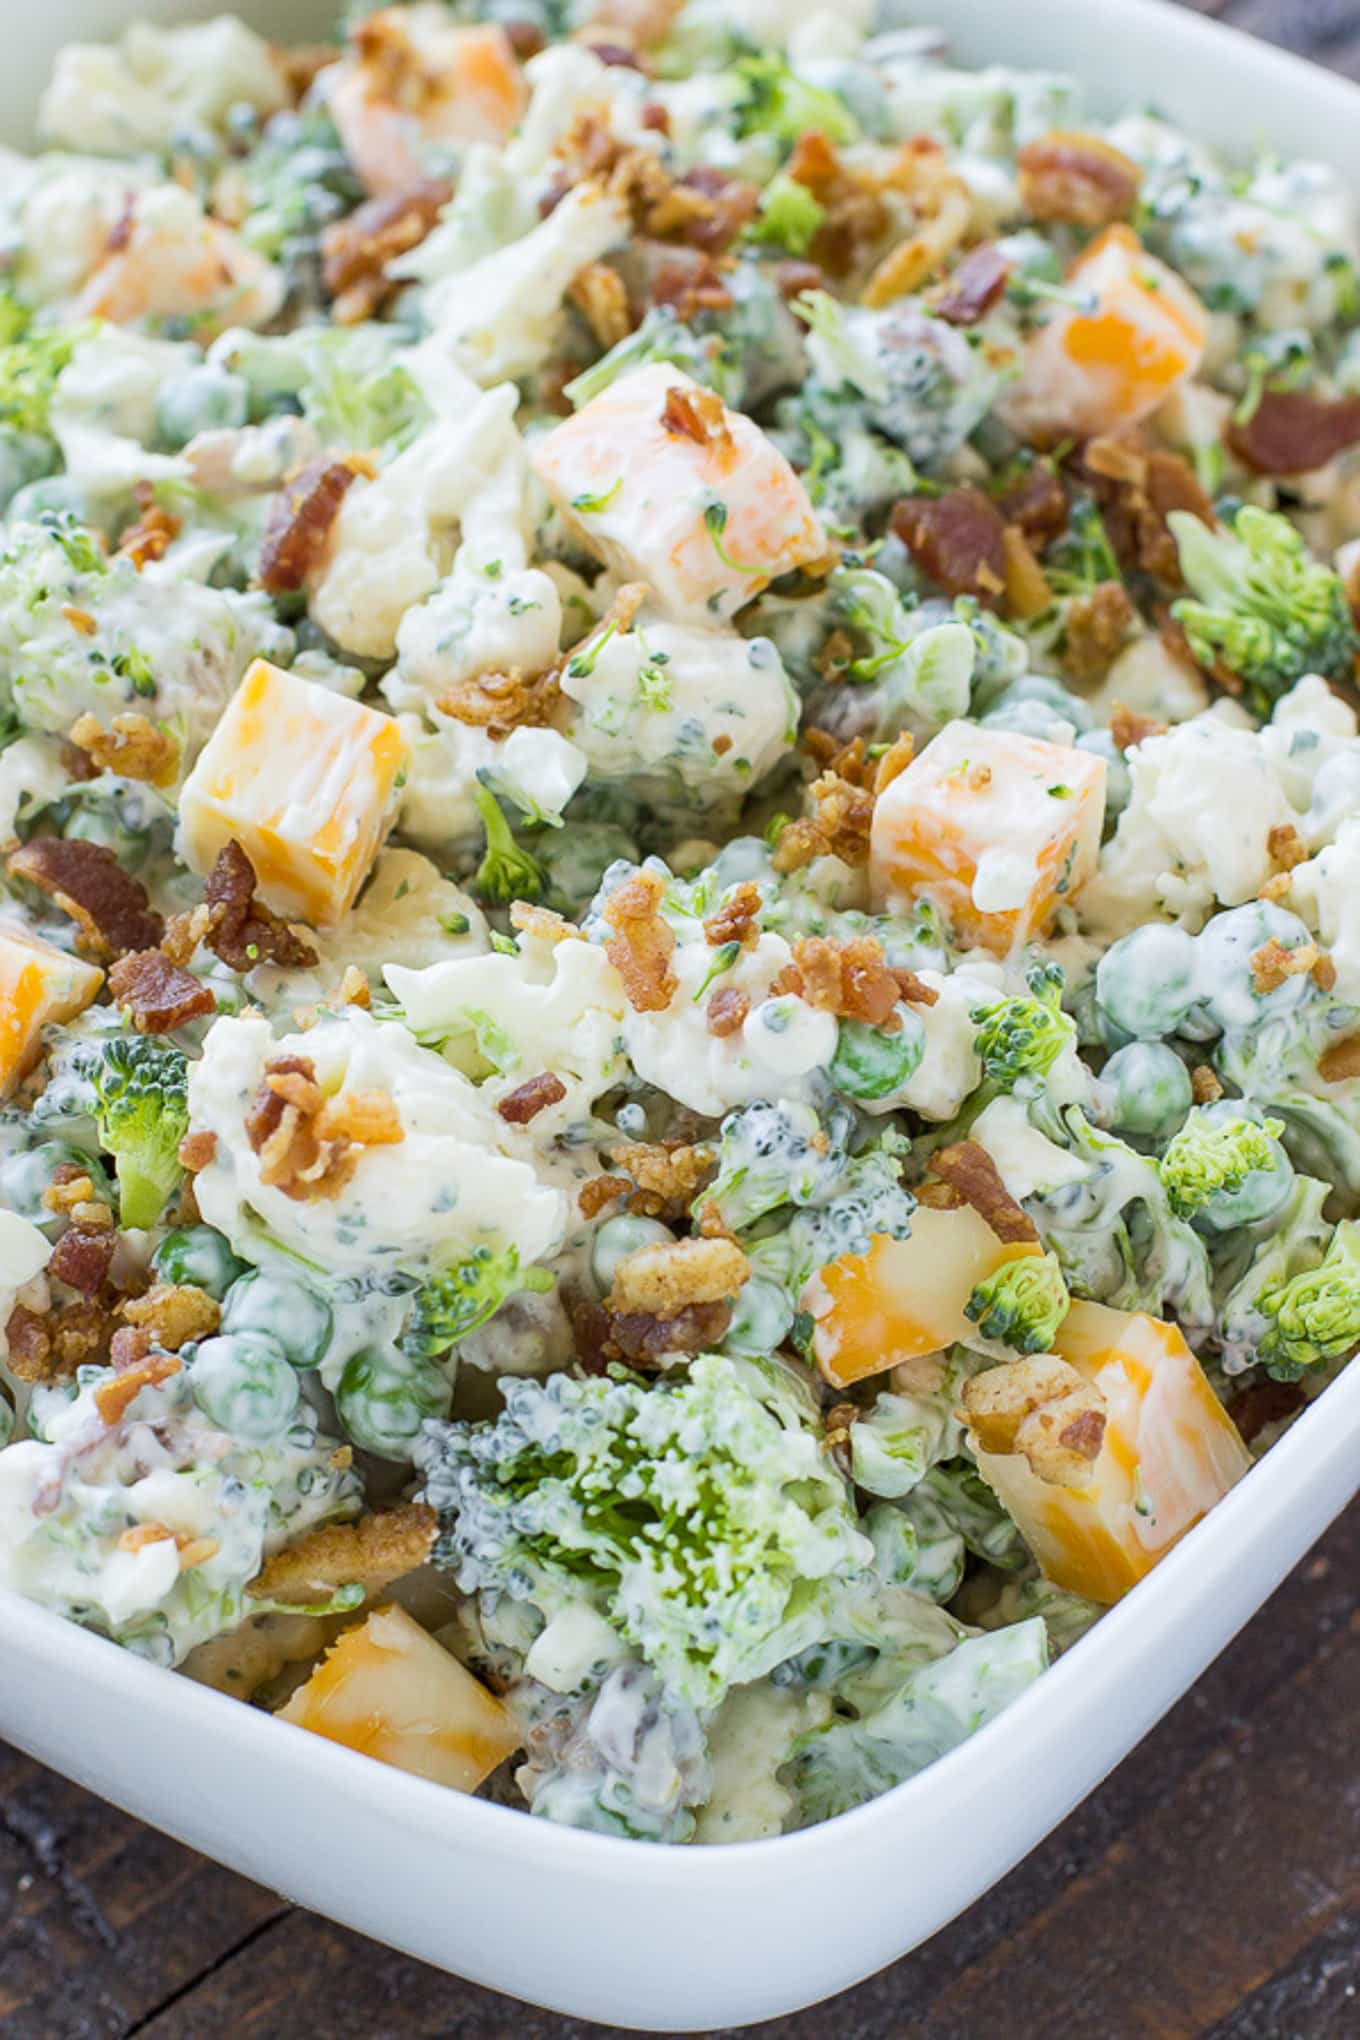 Assembled broccoli salad. 